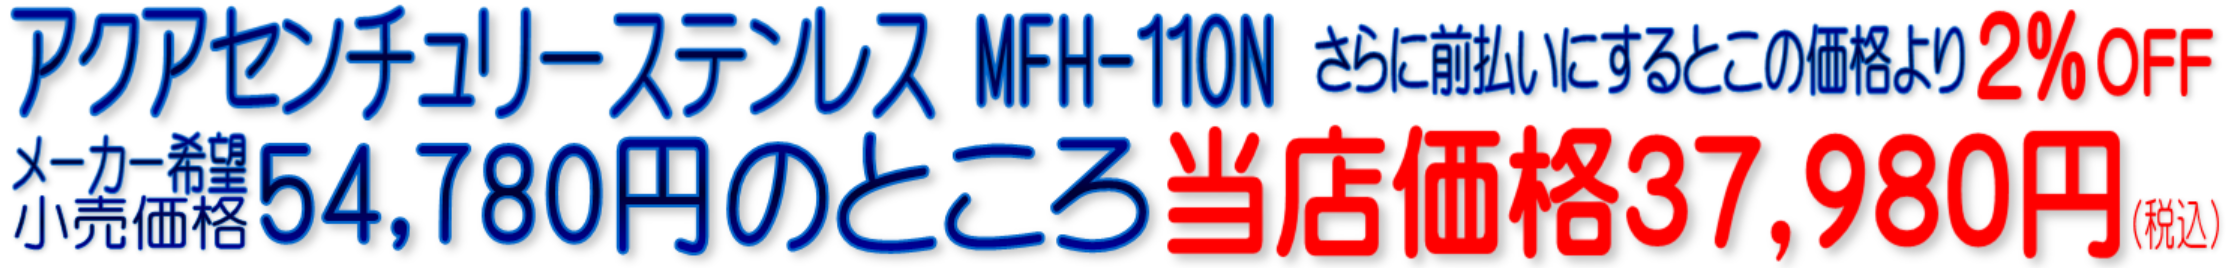 アクアセンチュリーステンレス MFH-110N